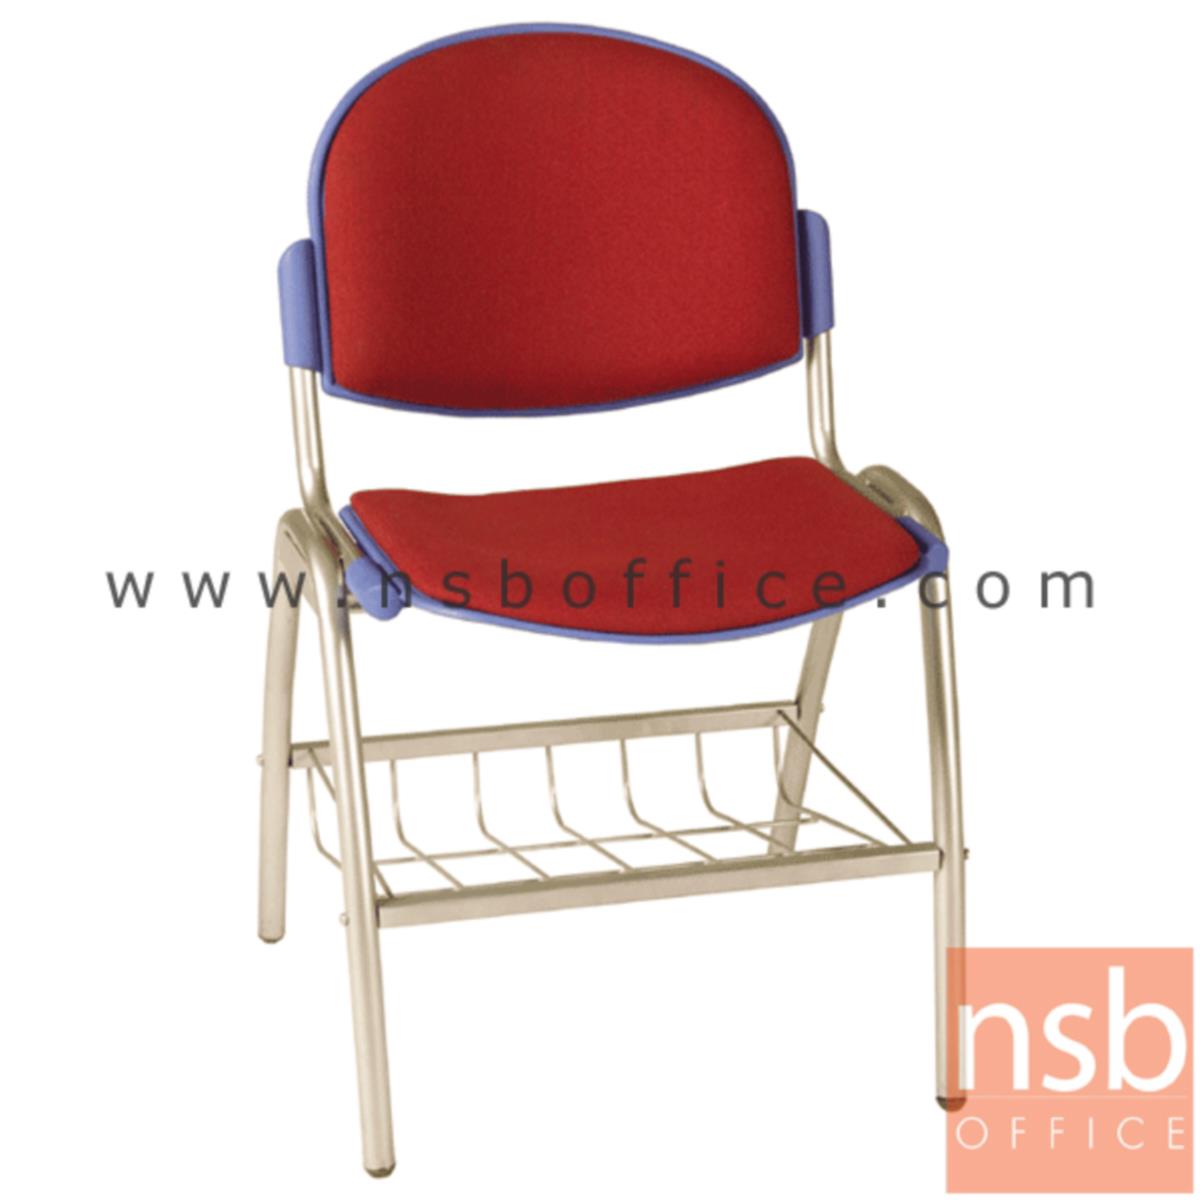 B05A046:เก้าอี้อเนกประสงค์เฟรมโพลี่ รุ่น A156-546  ขาเหล็กพ่นสีเทา